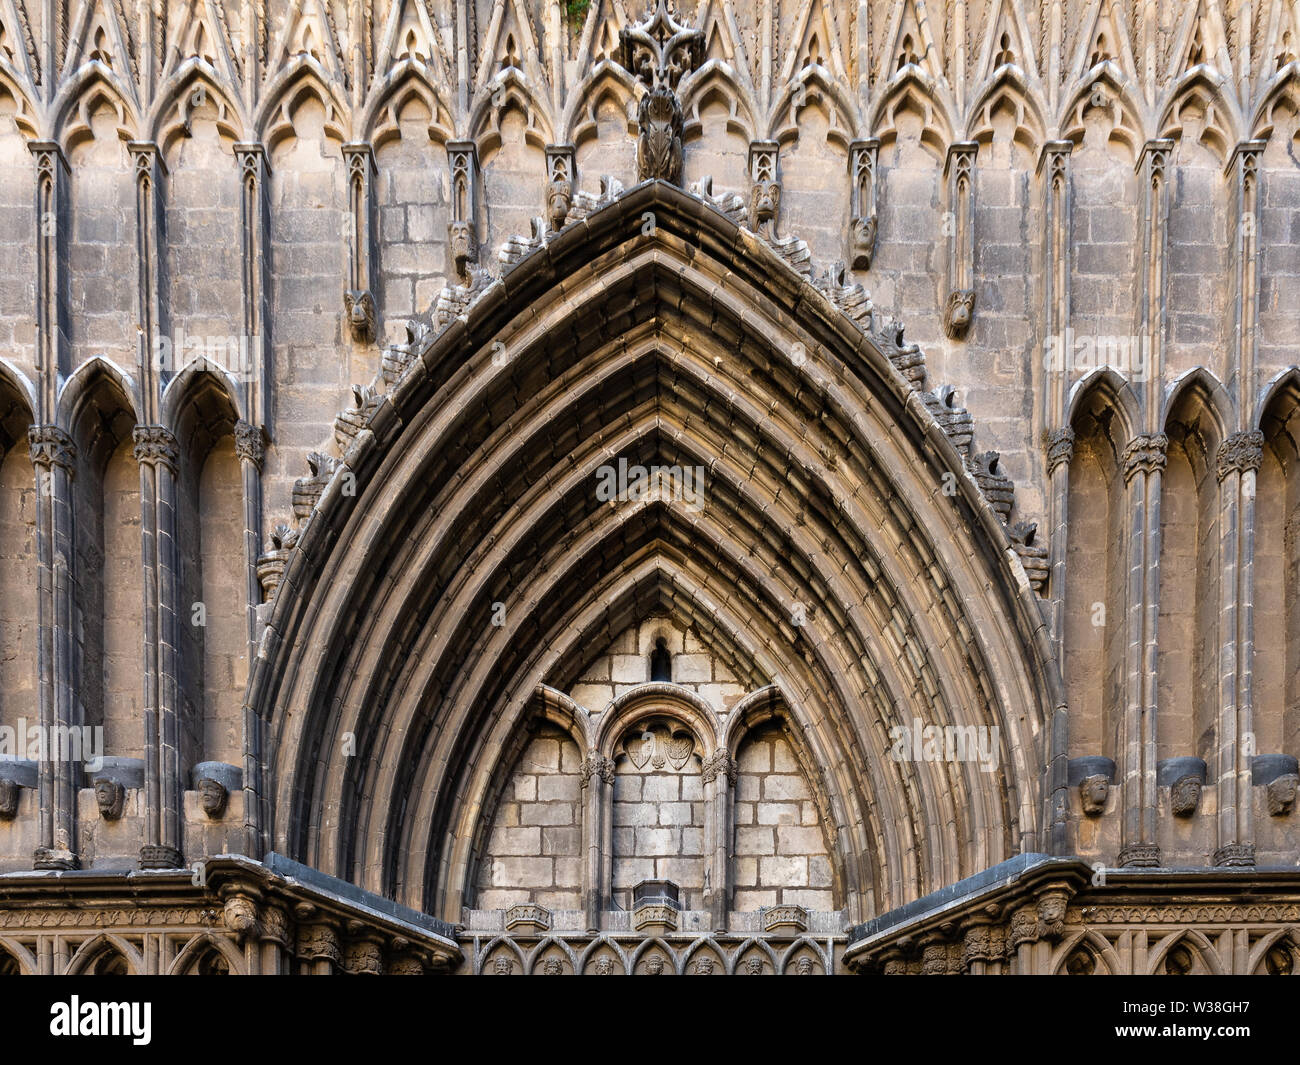 Eclesia de Santa Maria del Pi. Portal decorado en un típico estilo gótico catalán. Barcelona, España. Foto de stock